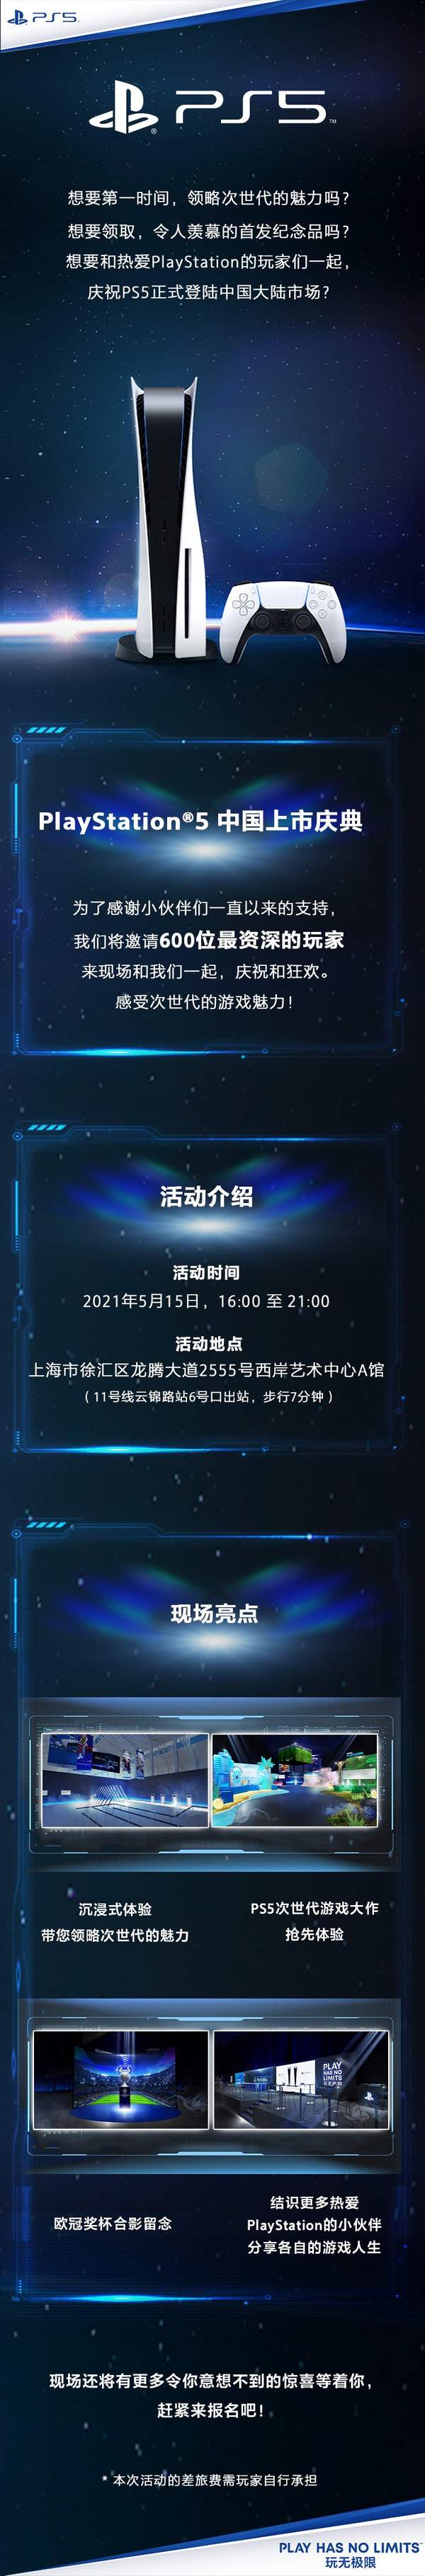 玩家|PlayStation5中国上市庆典5.15举办 邀请玩家到场见证